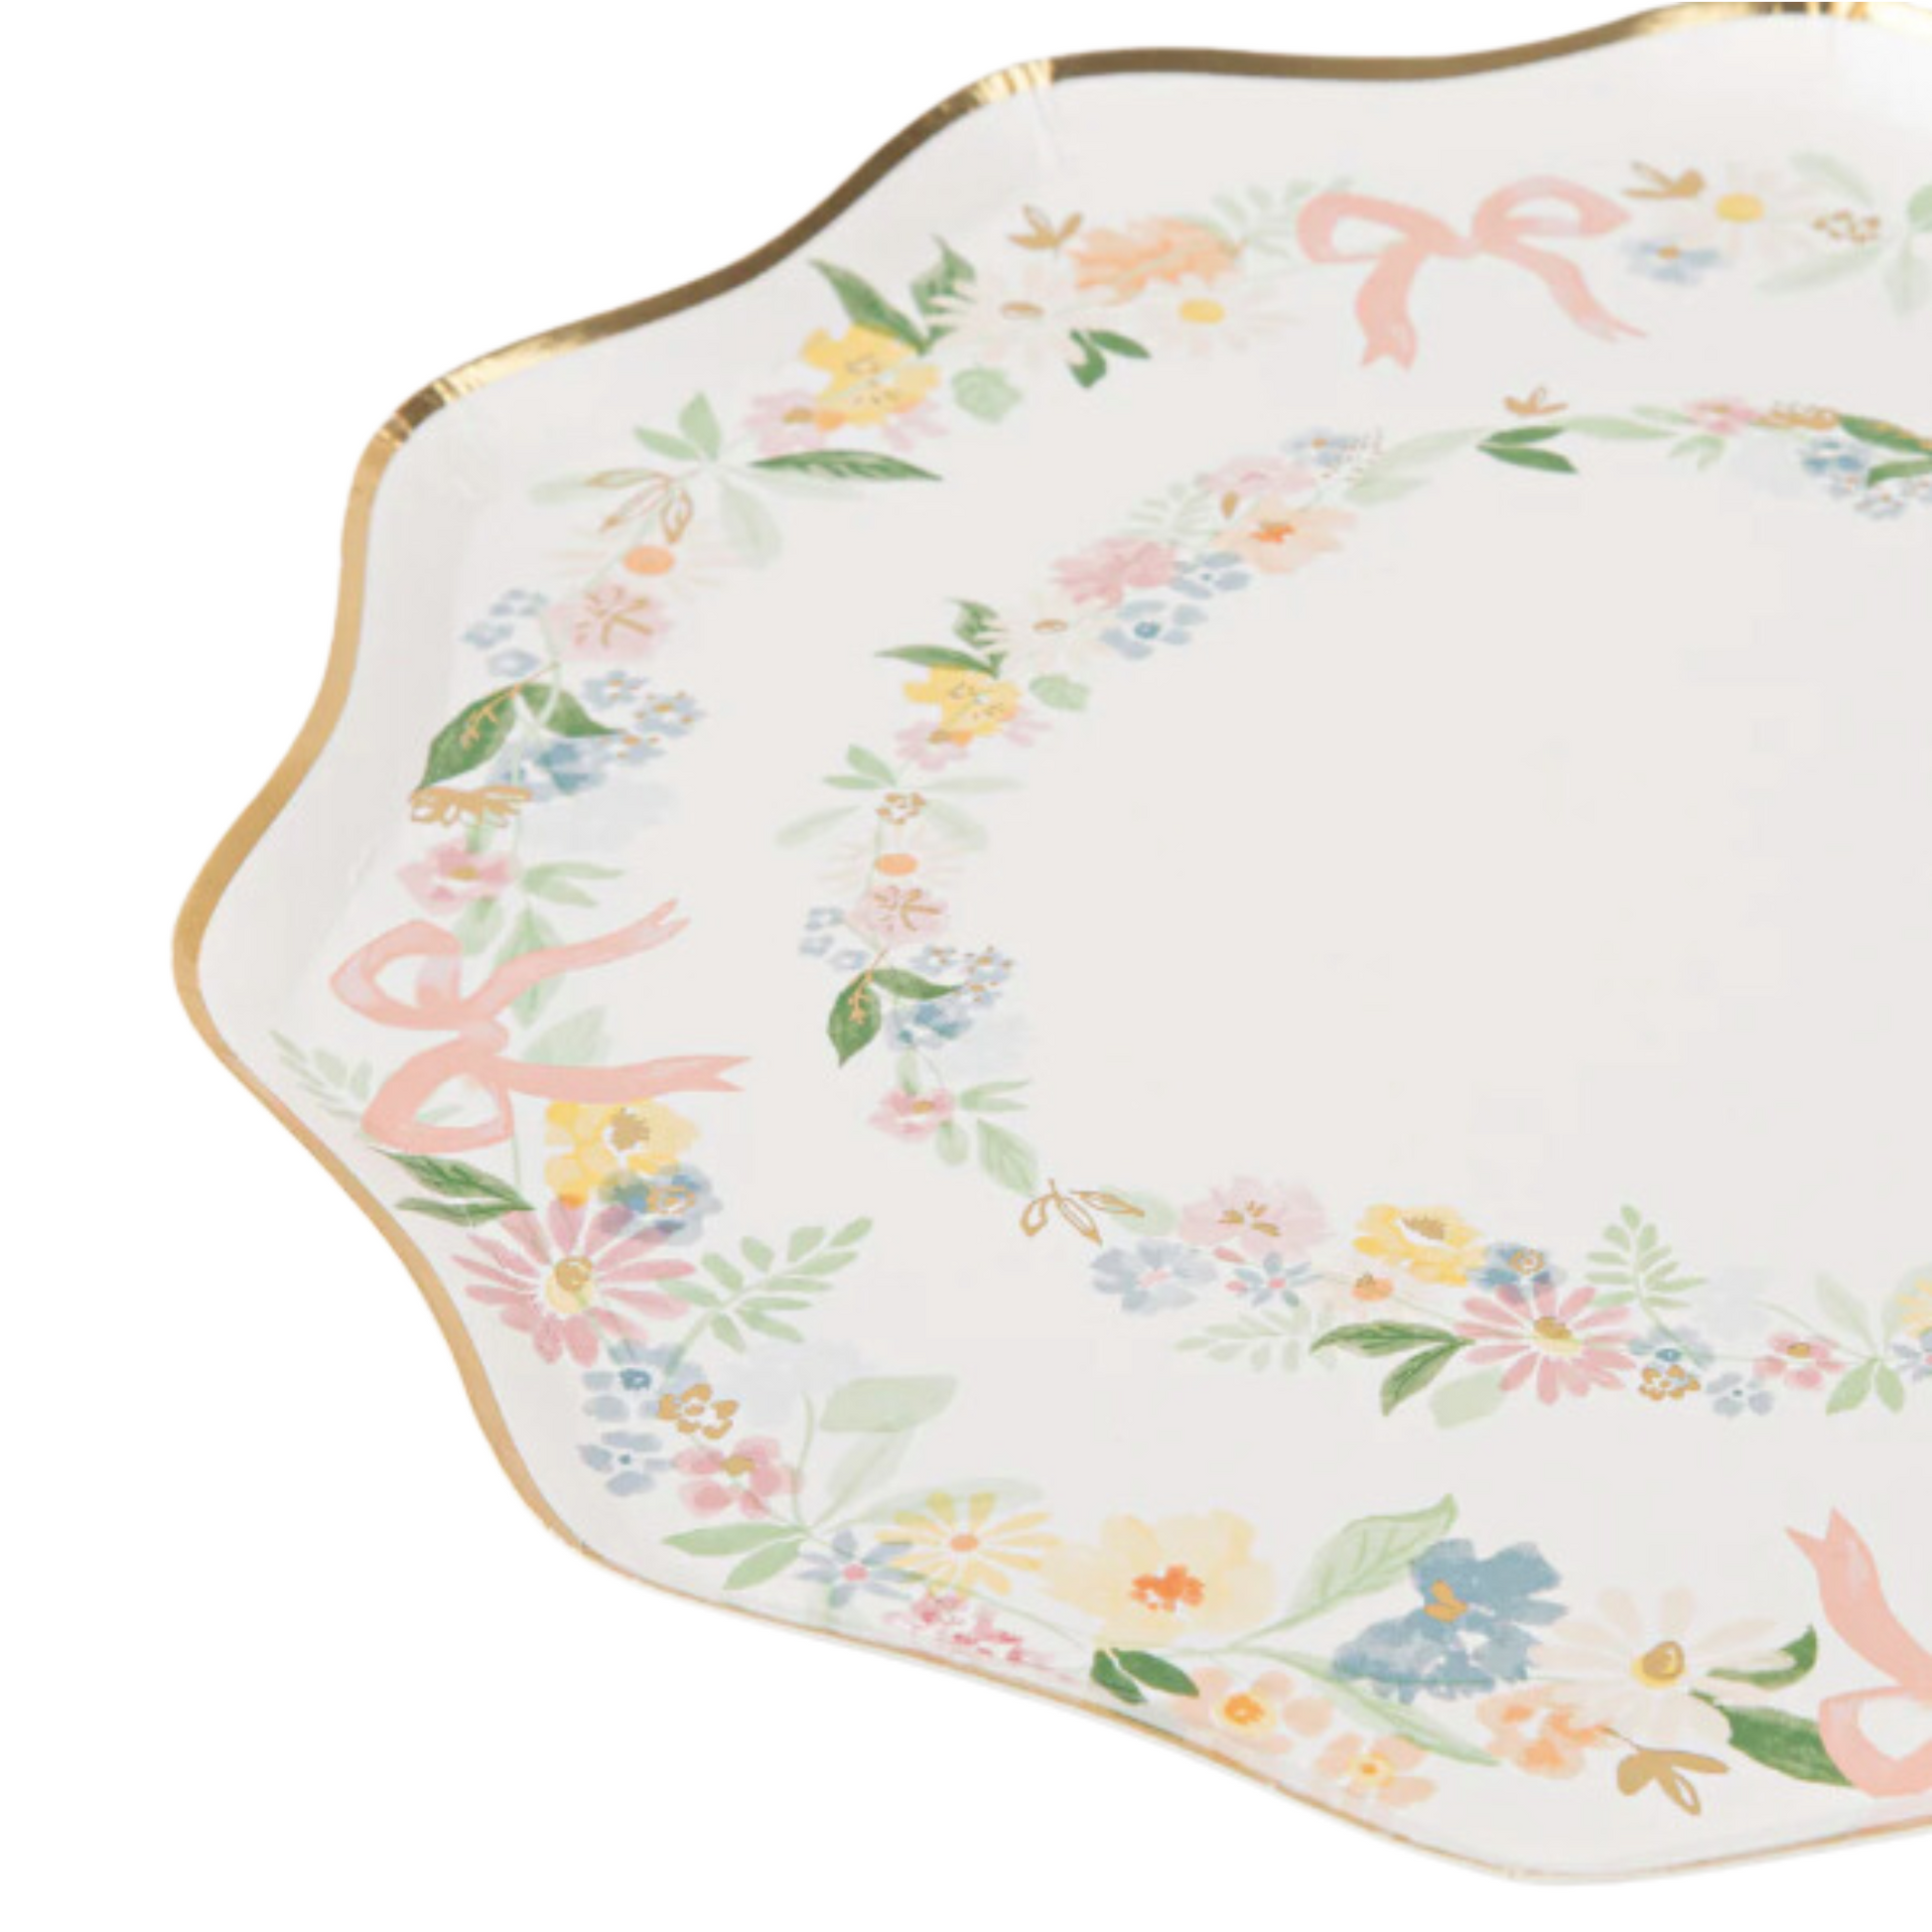 elegant floral side plates